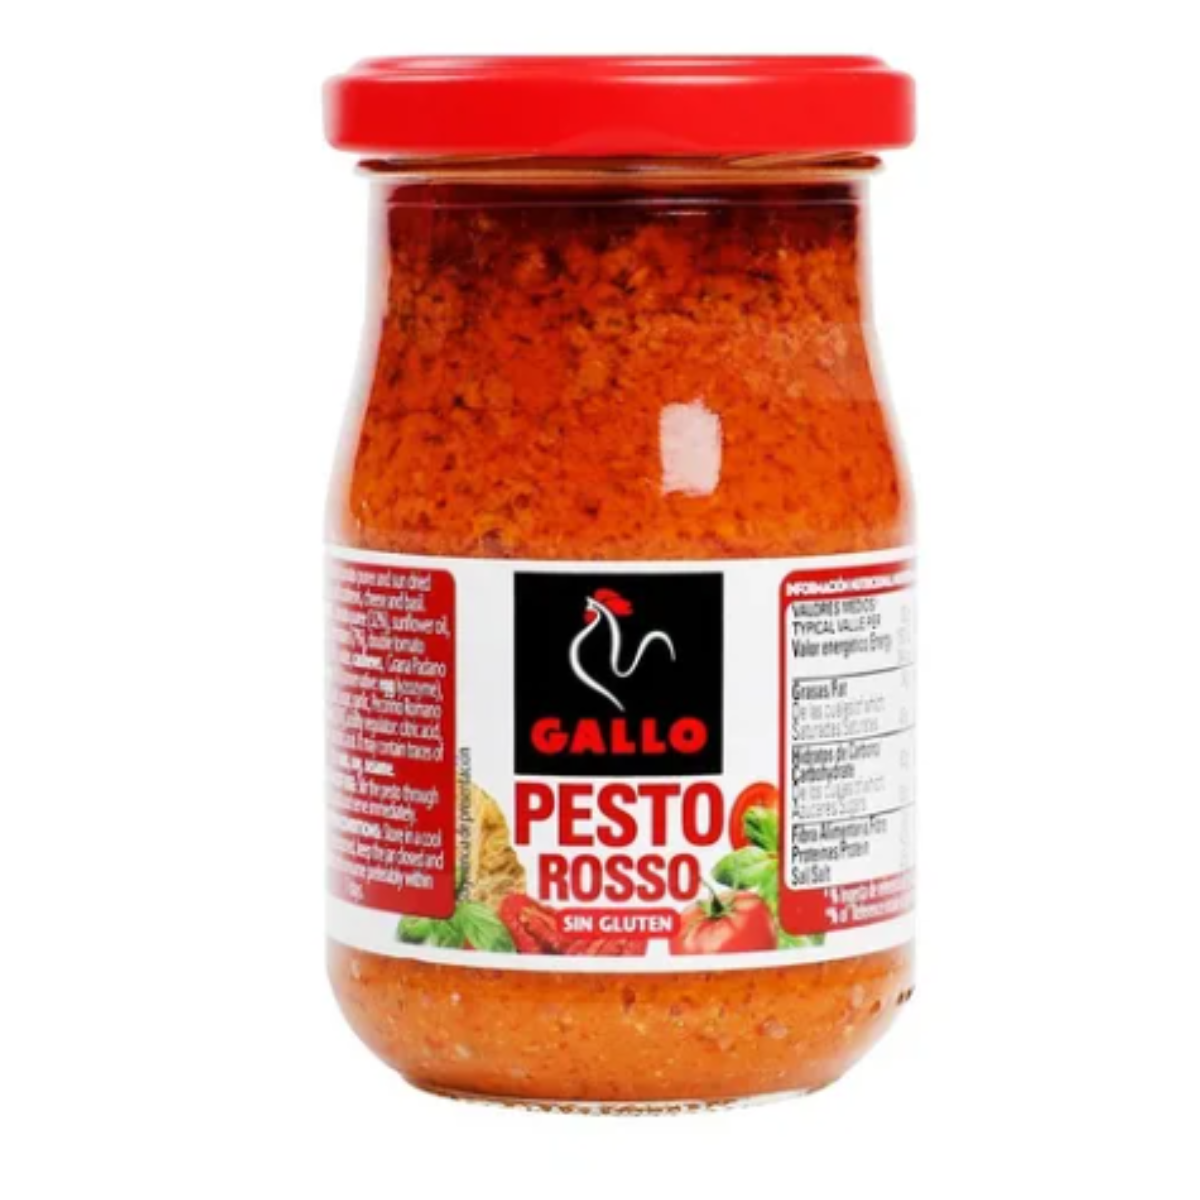 Load image into Gallery viewer, Salsa Pesto Rosso 190g - Pastas La casa del bacalao
